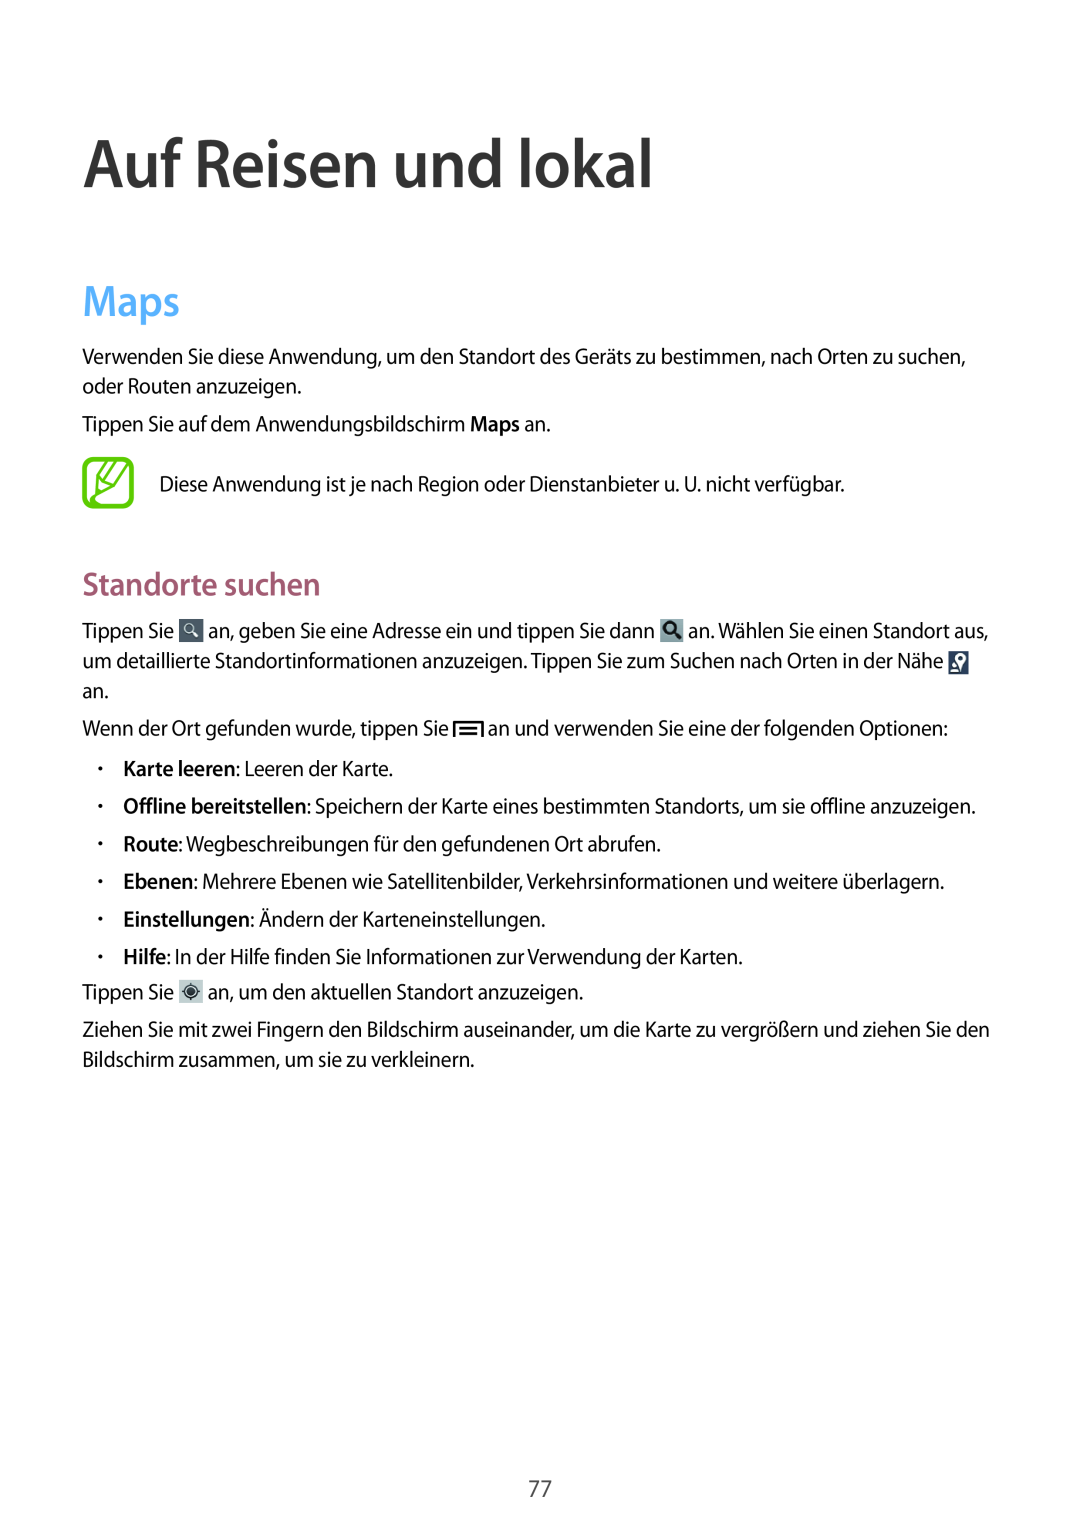 Samsung GT-S5280RWAMEO, GT-S5280LKAITV, GT-S5280RWAMOC, GT-S5280LKATPH manual Auf Reisen und lokal, Maps, Standorte suchen 